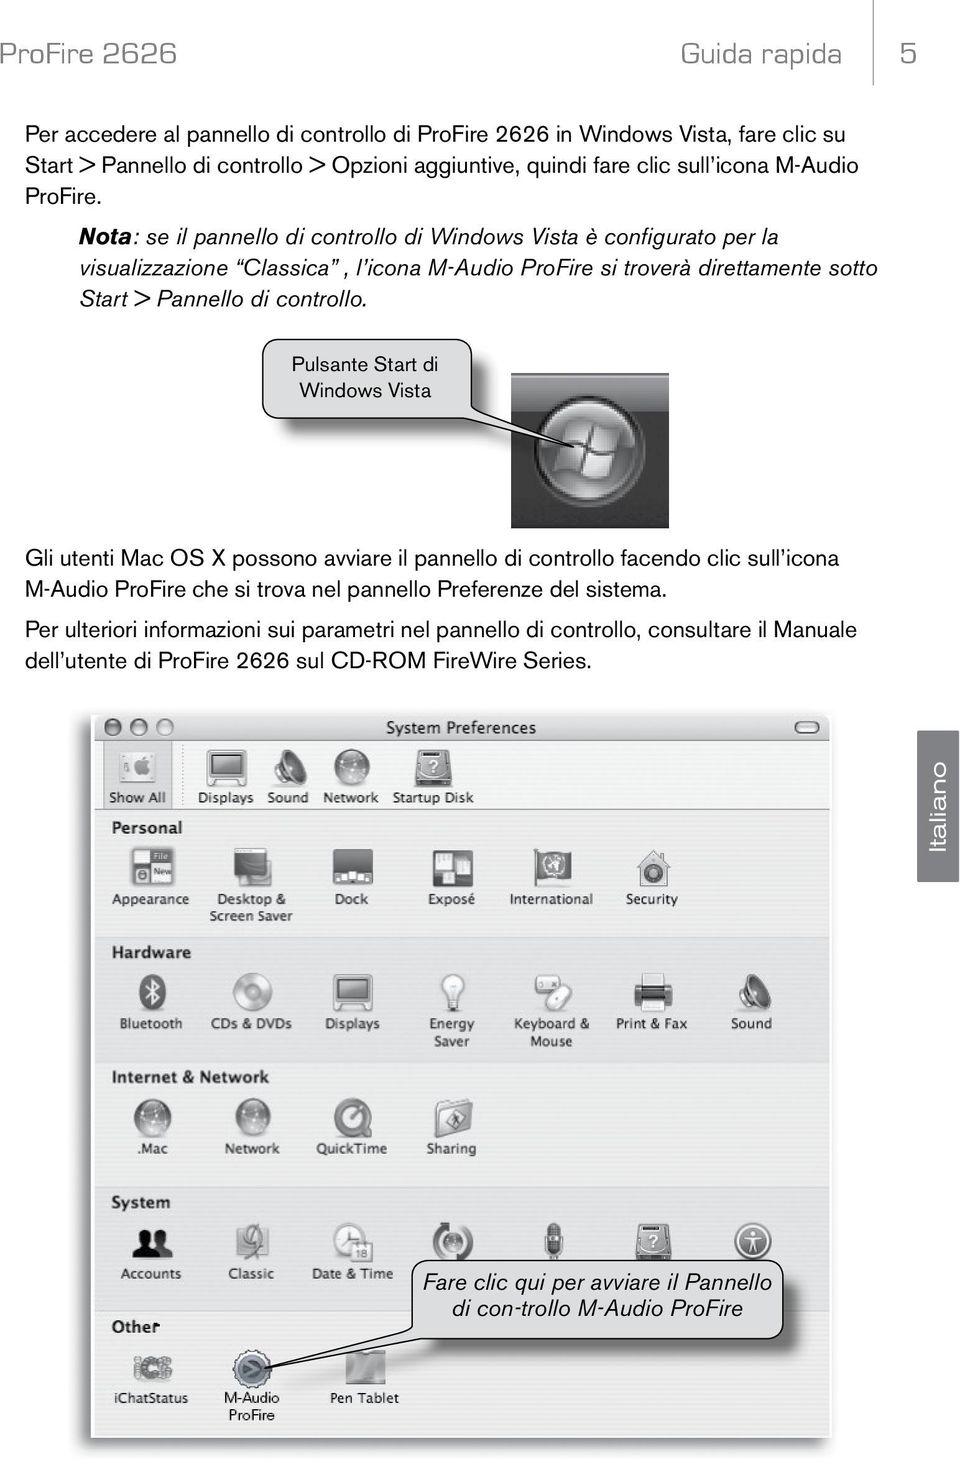 Pulsante Start di Windows Vista Gli utenti Mac OS X possono avviare il pannello di controllo facendo clic sull icona M-Audio ProFire che si trova nel pannello Preferenze del sistema.